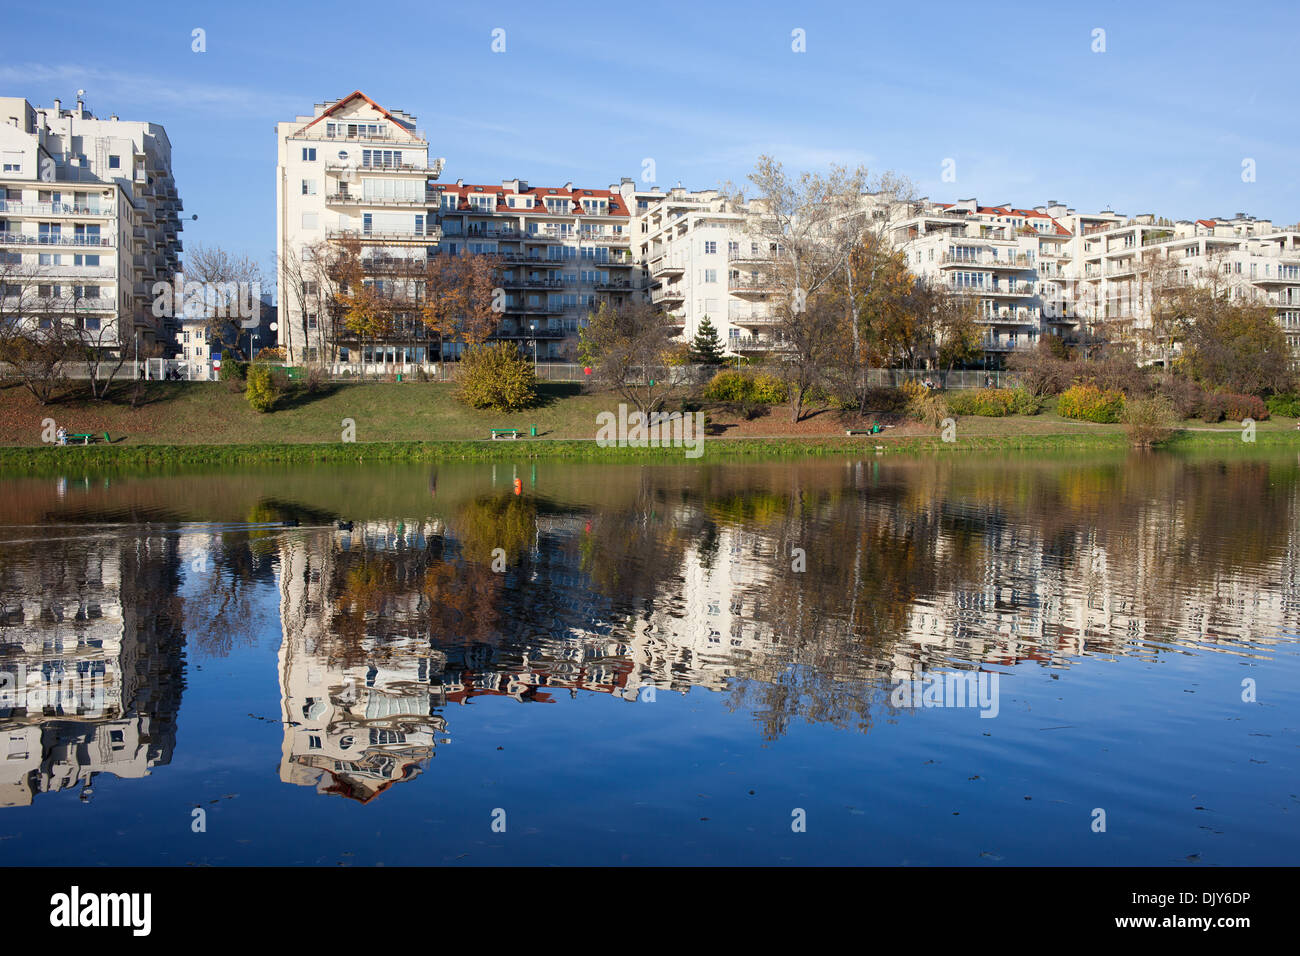 Apartment houses condominium complex along the lake in Skaryszewski Park in Warsaw, Poland. Stock Photo